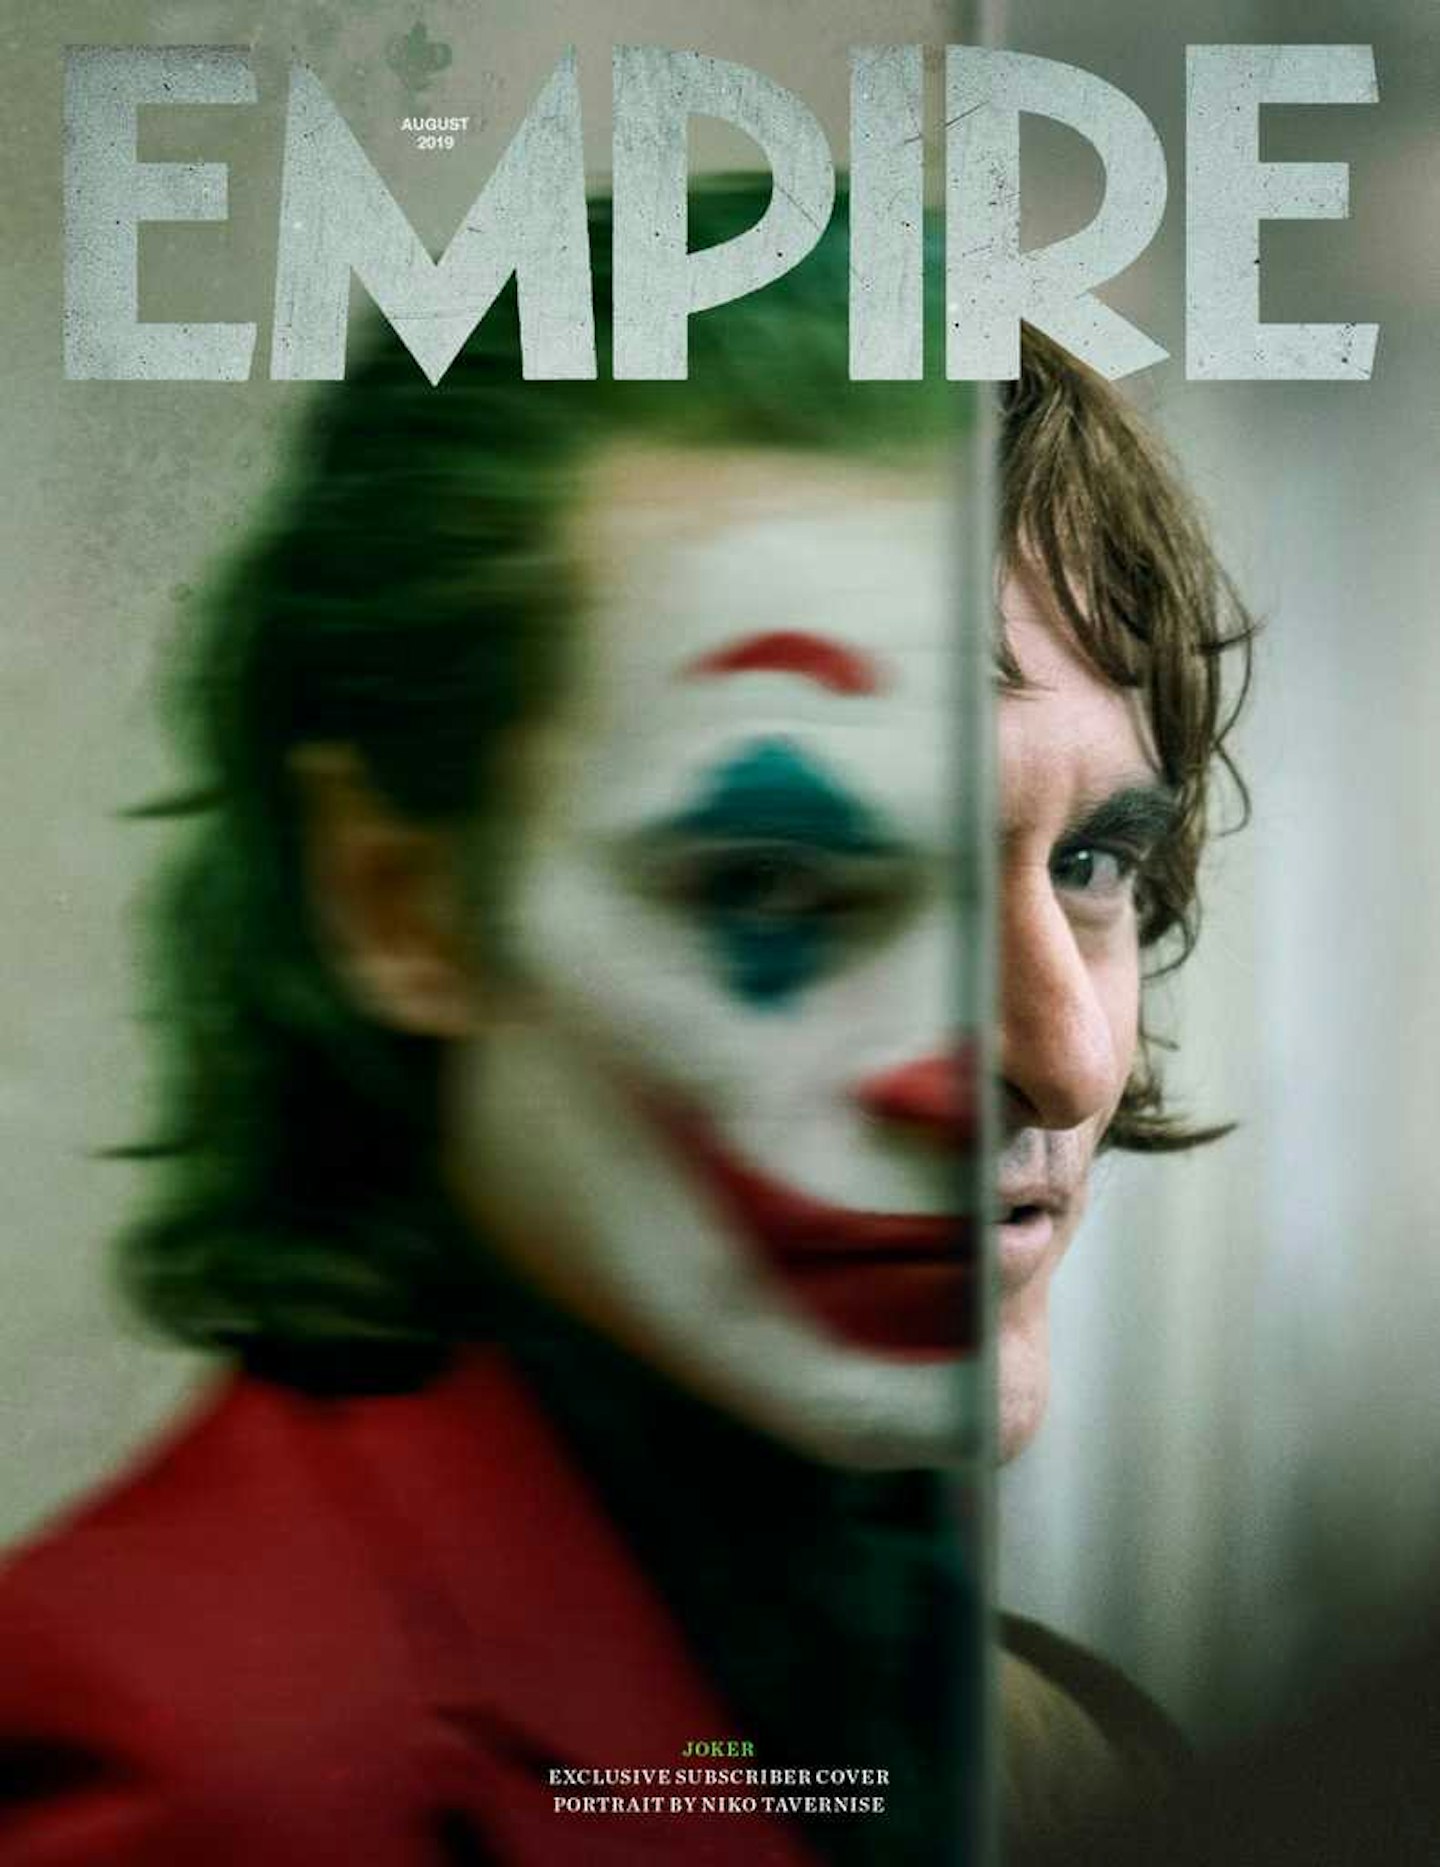 Empire Joker Subscriber Cover